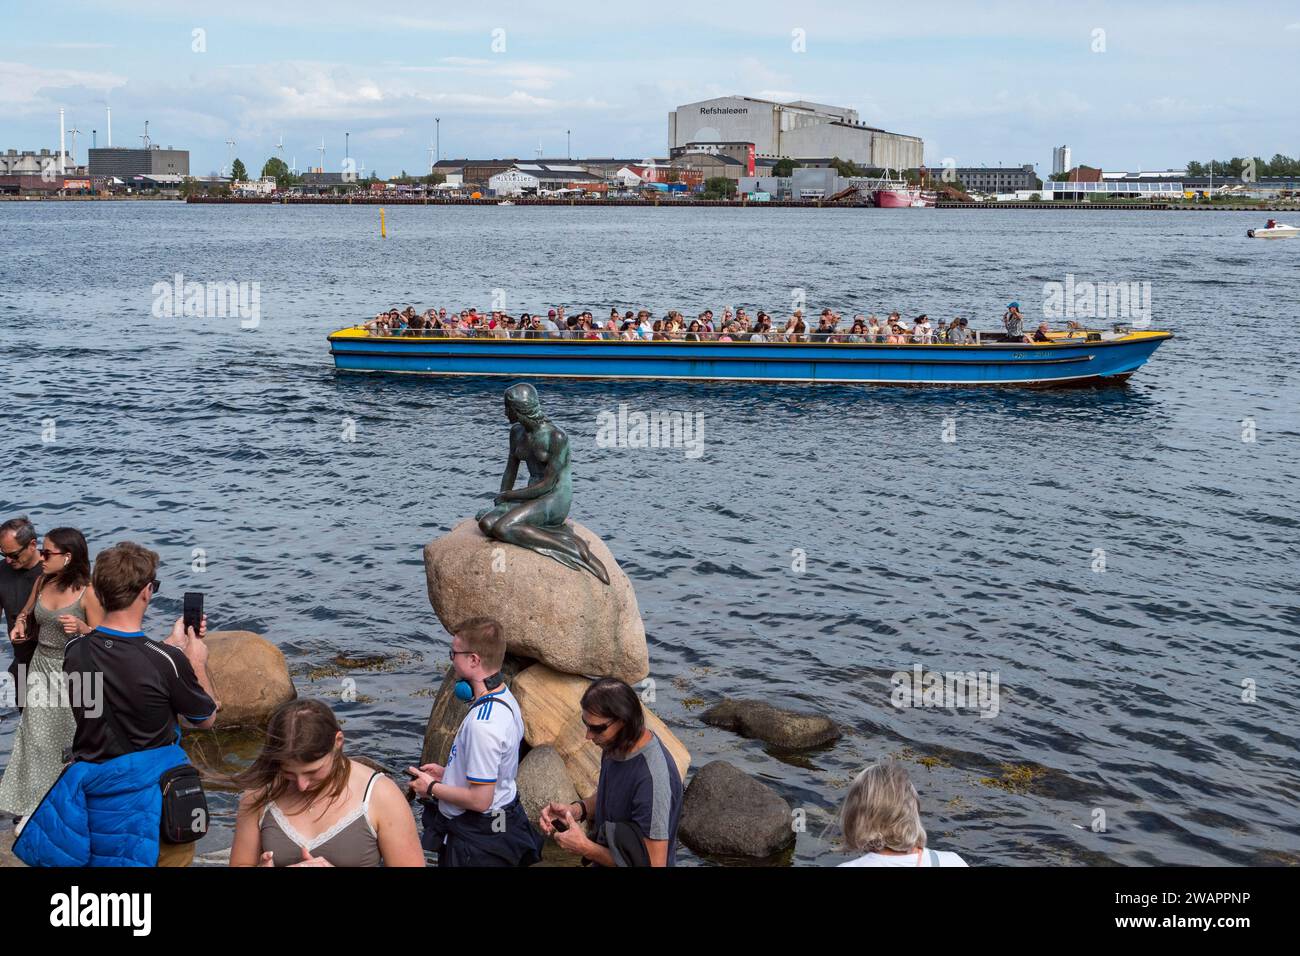 Bateau d'excursion passant près de la sculpture de la petite Sirène (Den Lille Havfrue) au bord de l'eau sur la promenade Langelinie, Copenhague, Danemark. Banque D'Images